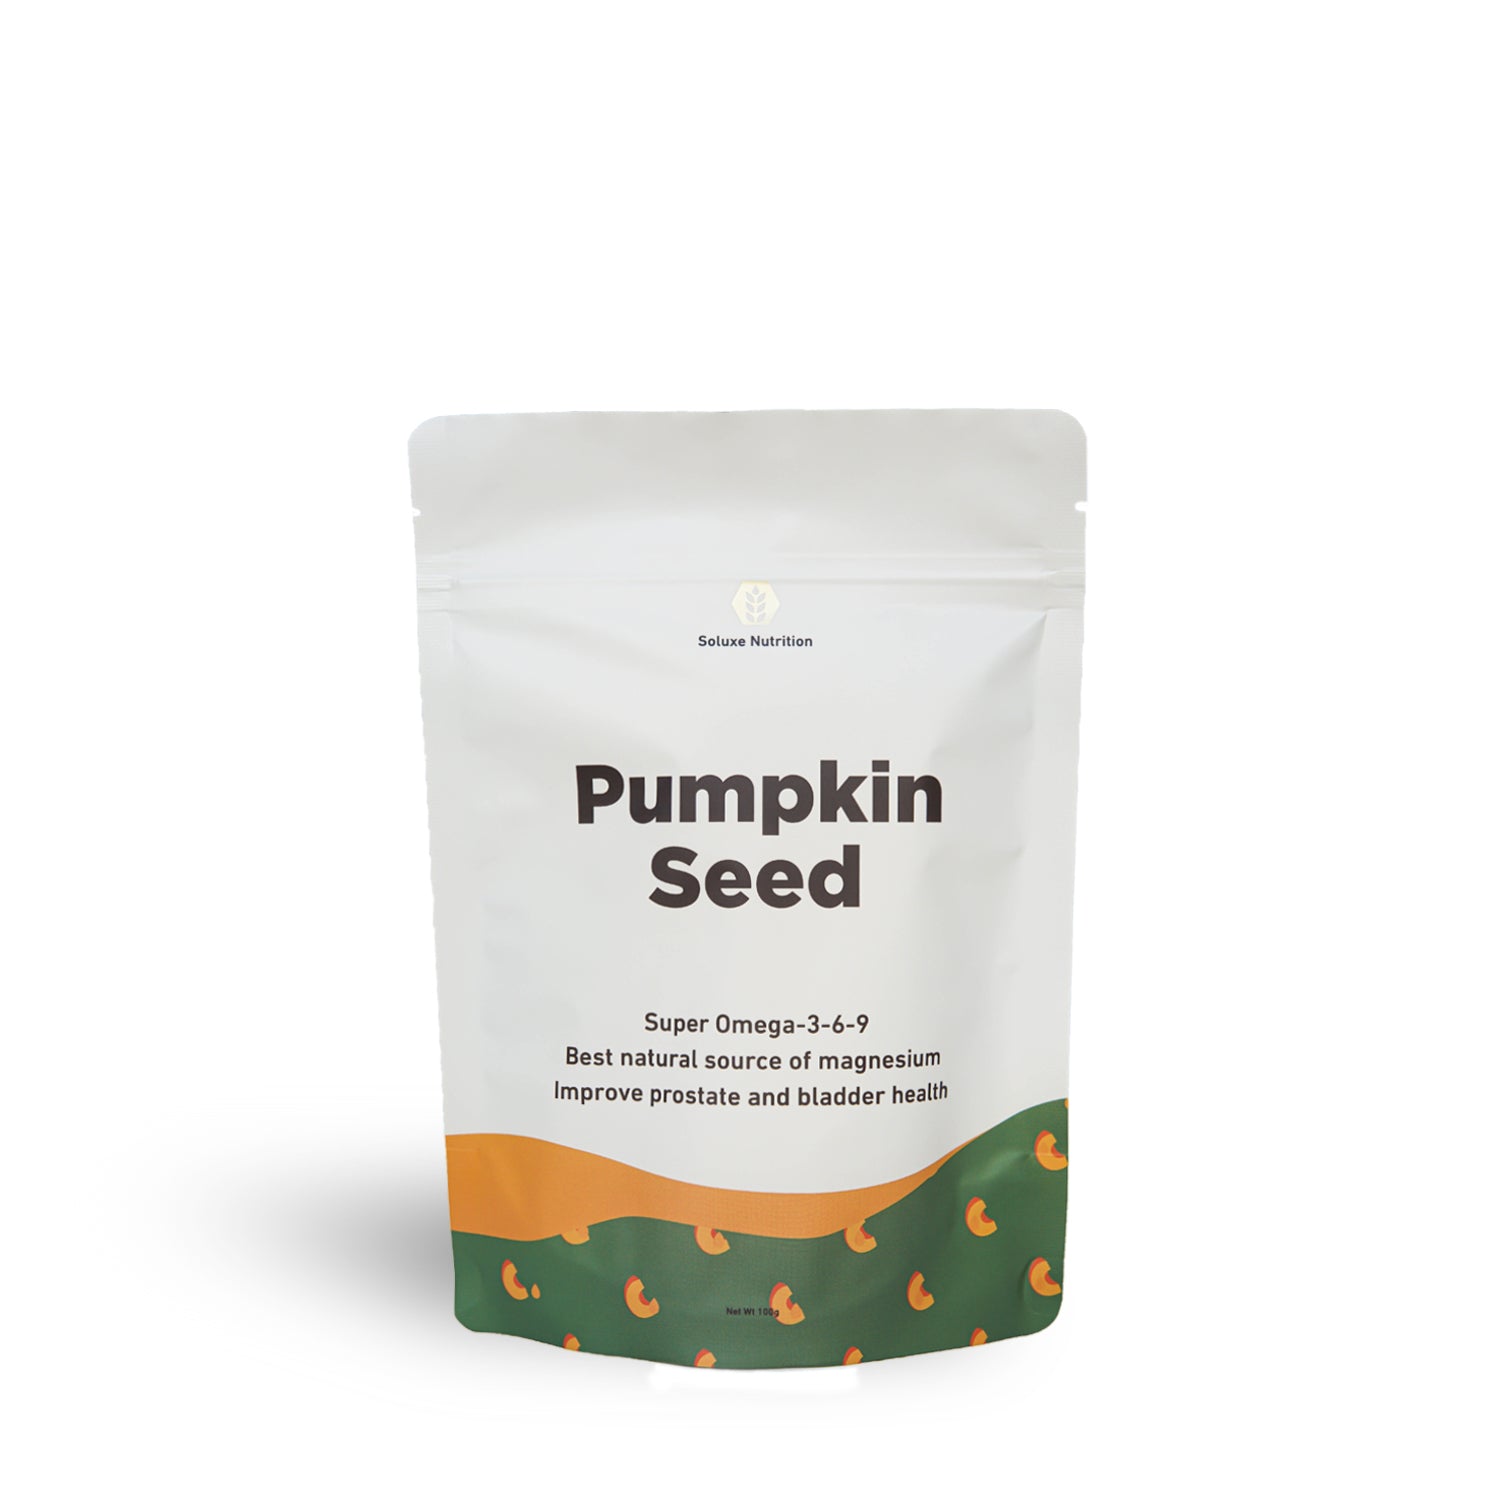 Organic Pumpkin Seeds